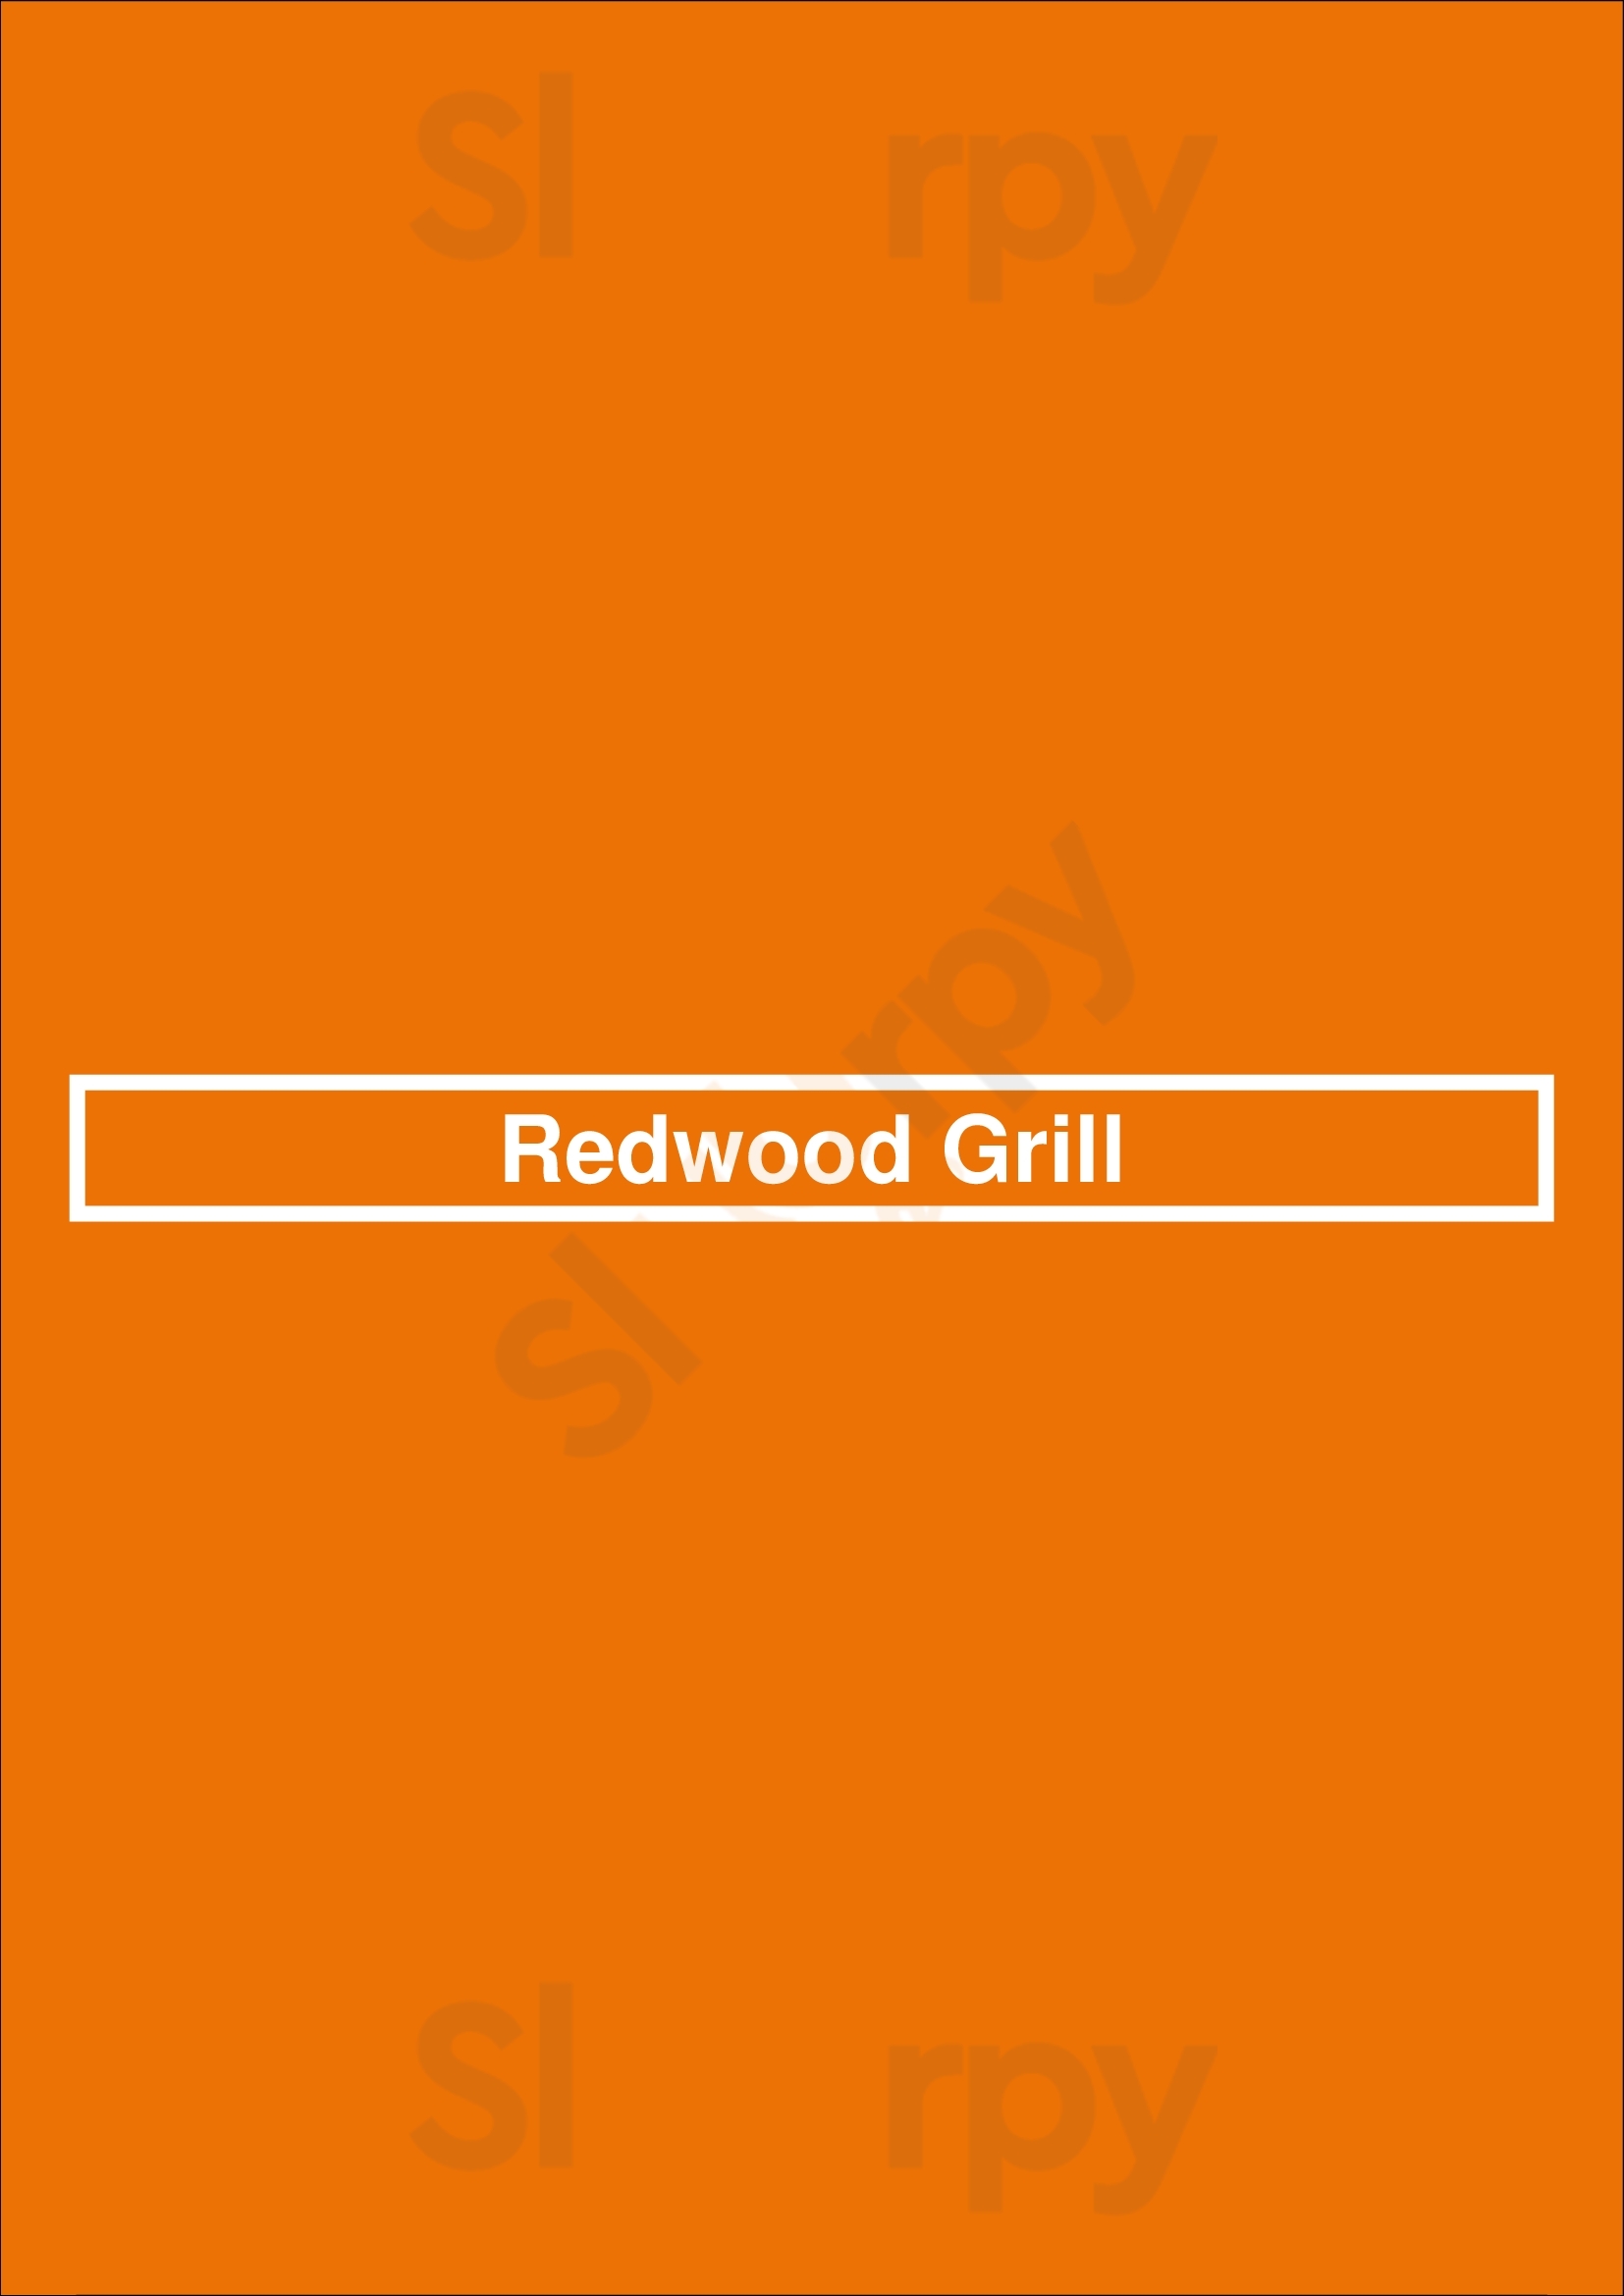 Redwood Grill Halifax Menu - 1